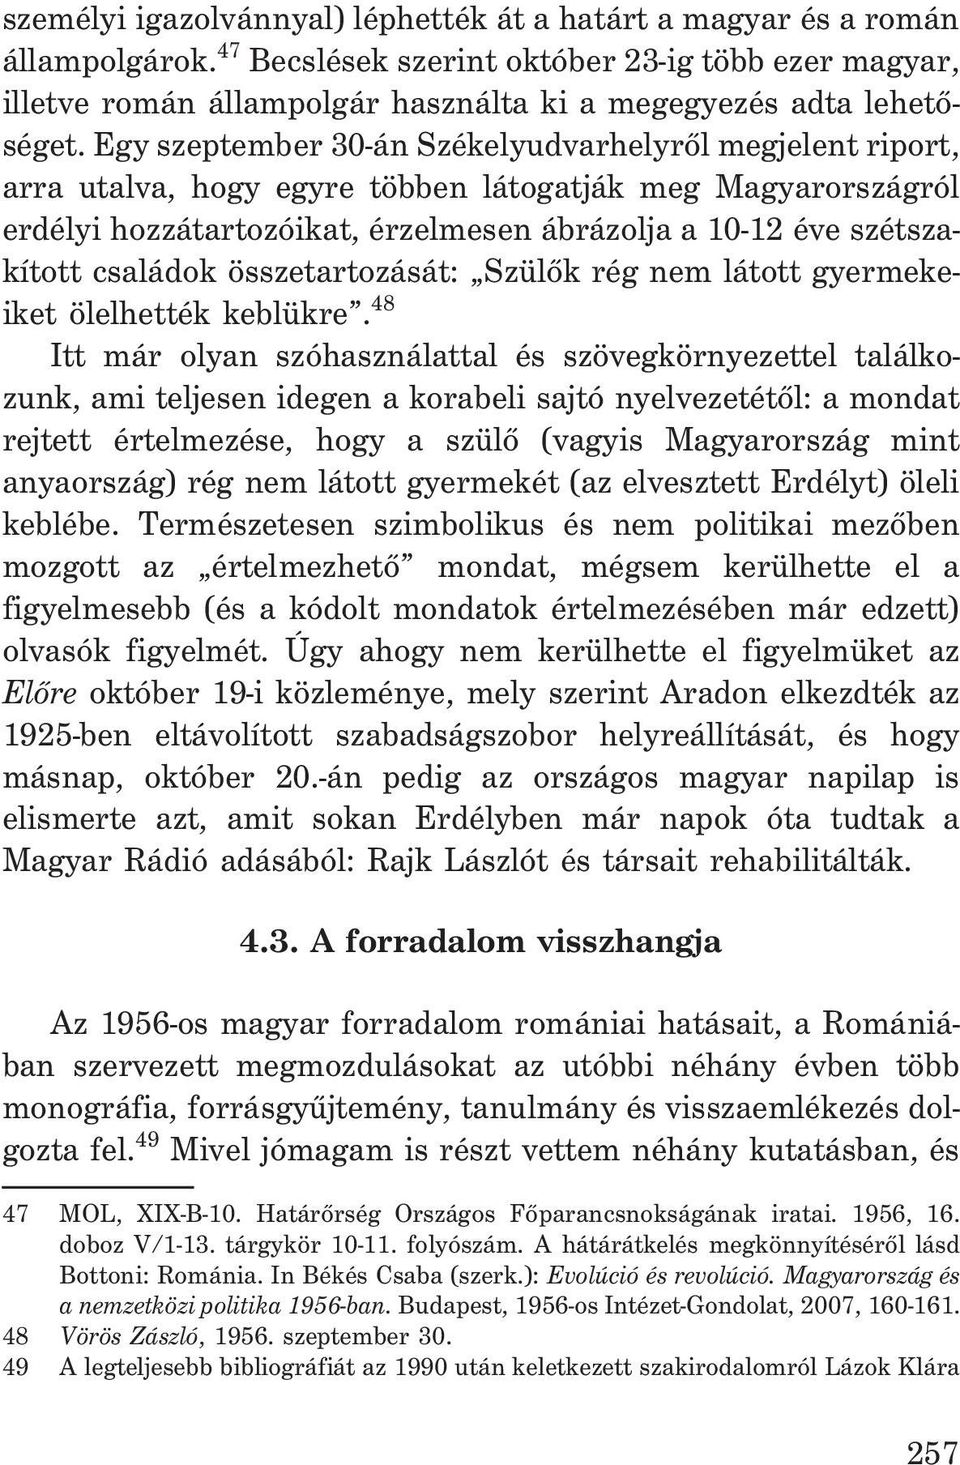 Egy szeptember 30-án Székelyudvarhelyrõl megjelent riport, arra utalva, hogy egyre többen látogatják meg Magyarországról erdélyi hozzátartozóikat, érzelmesen ábrázolja a 10-12 éve szétszakított